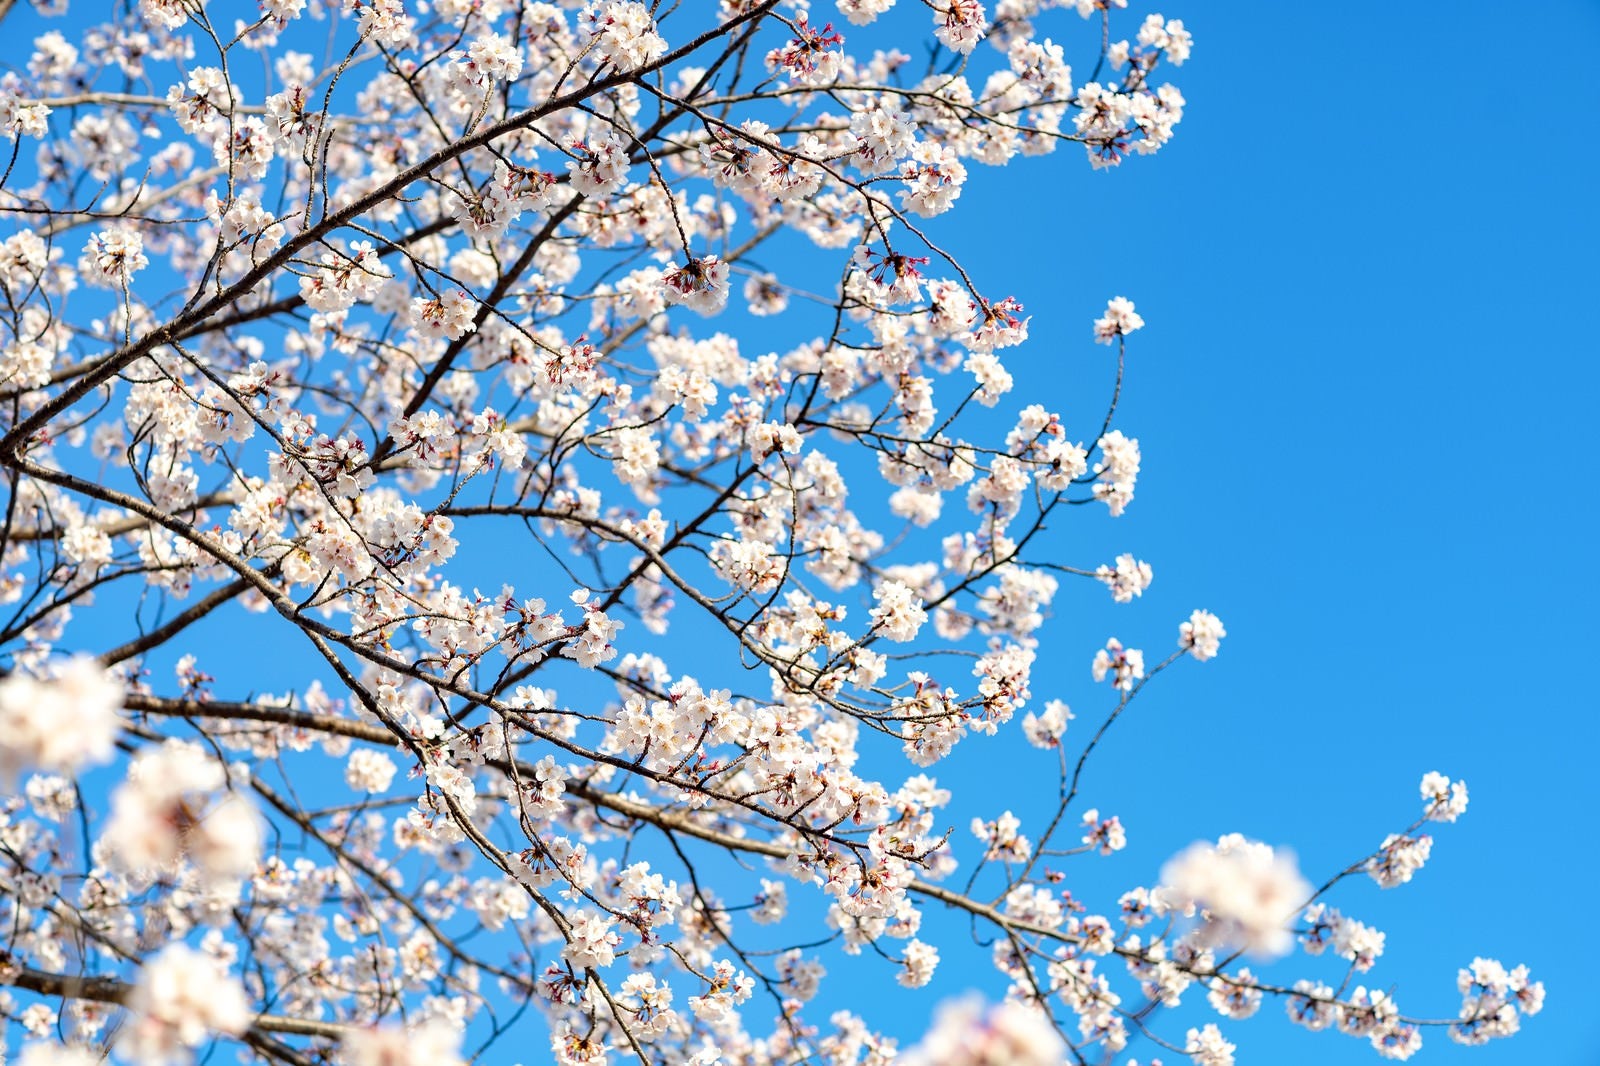 「青空と桜満開」の写真